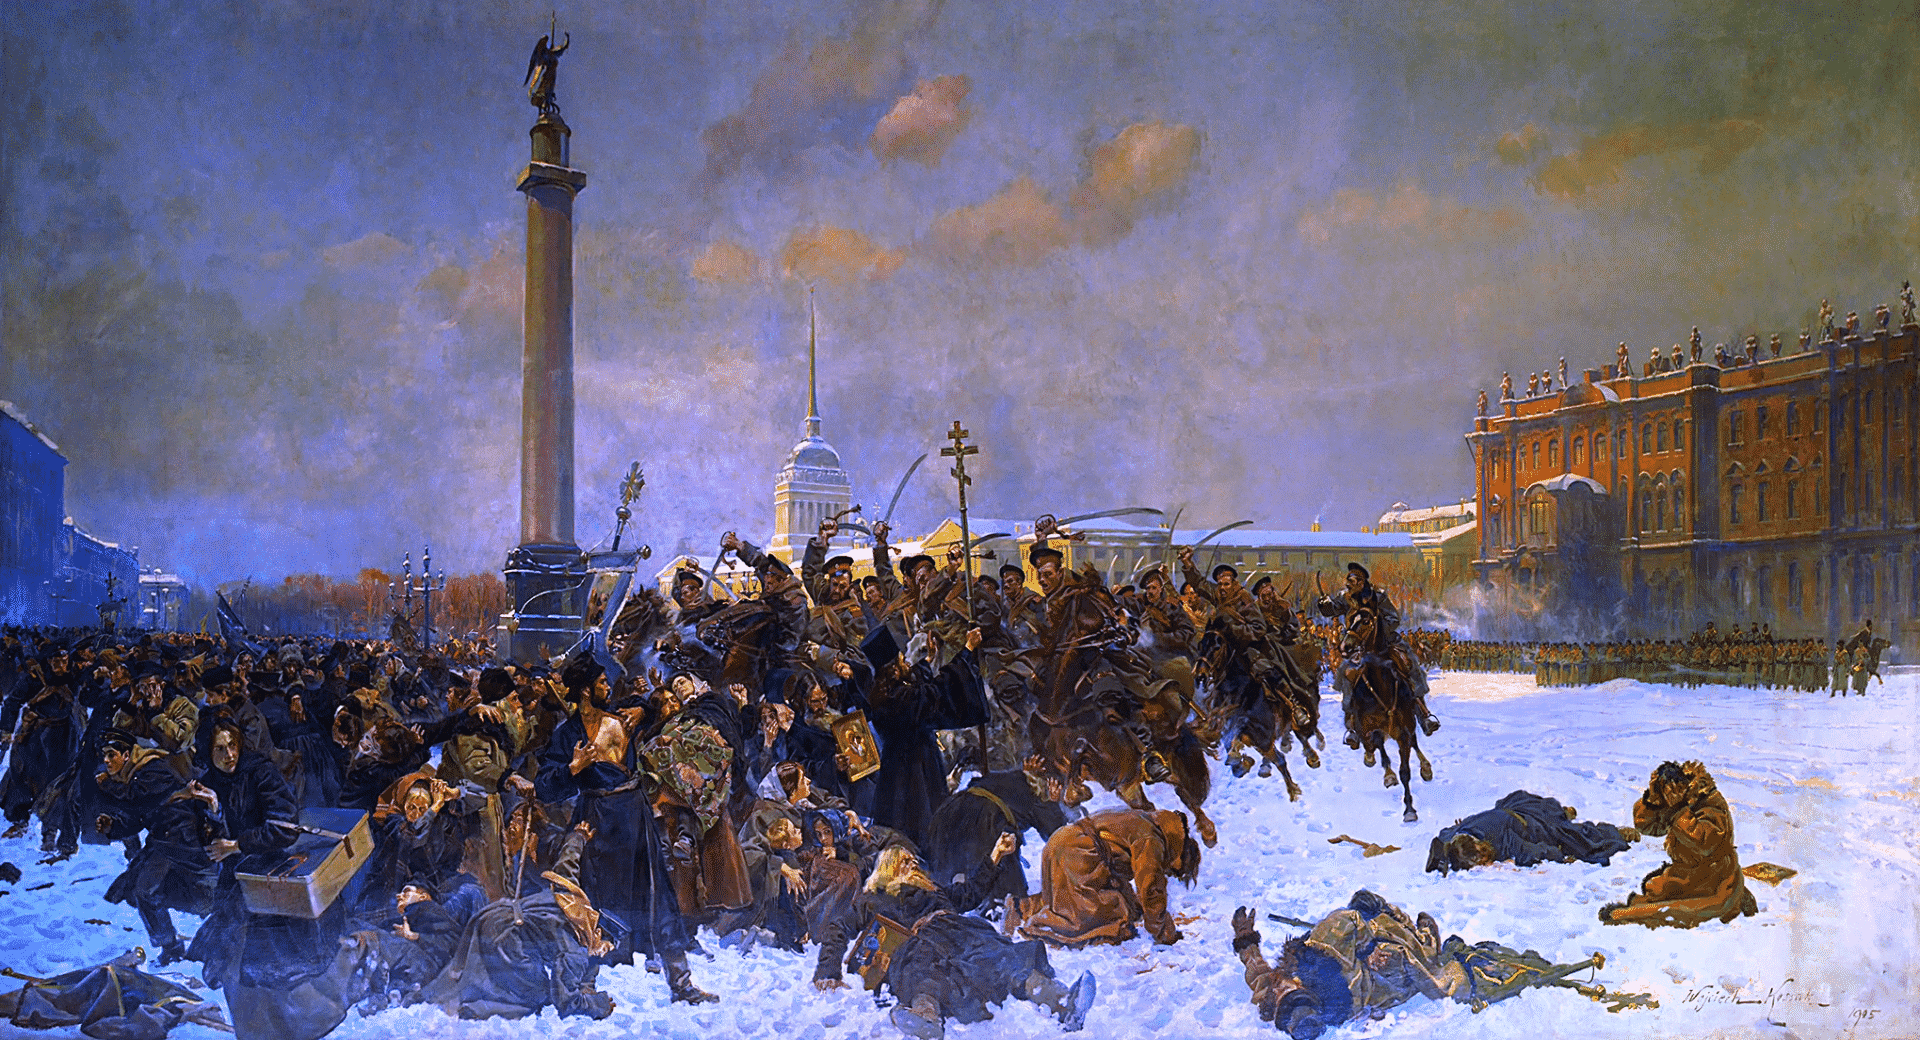 O Domingo Sangrento foi um massacre civil que ruiu o Czarismo russo